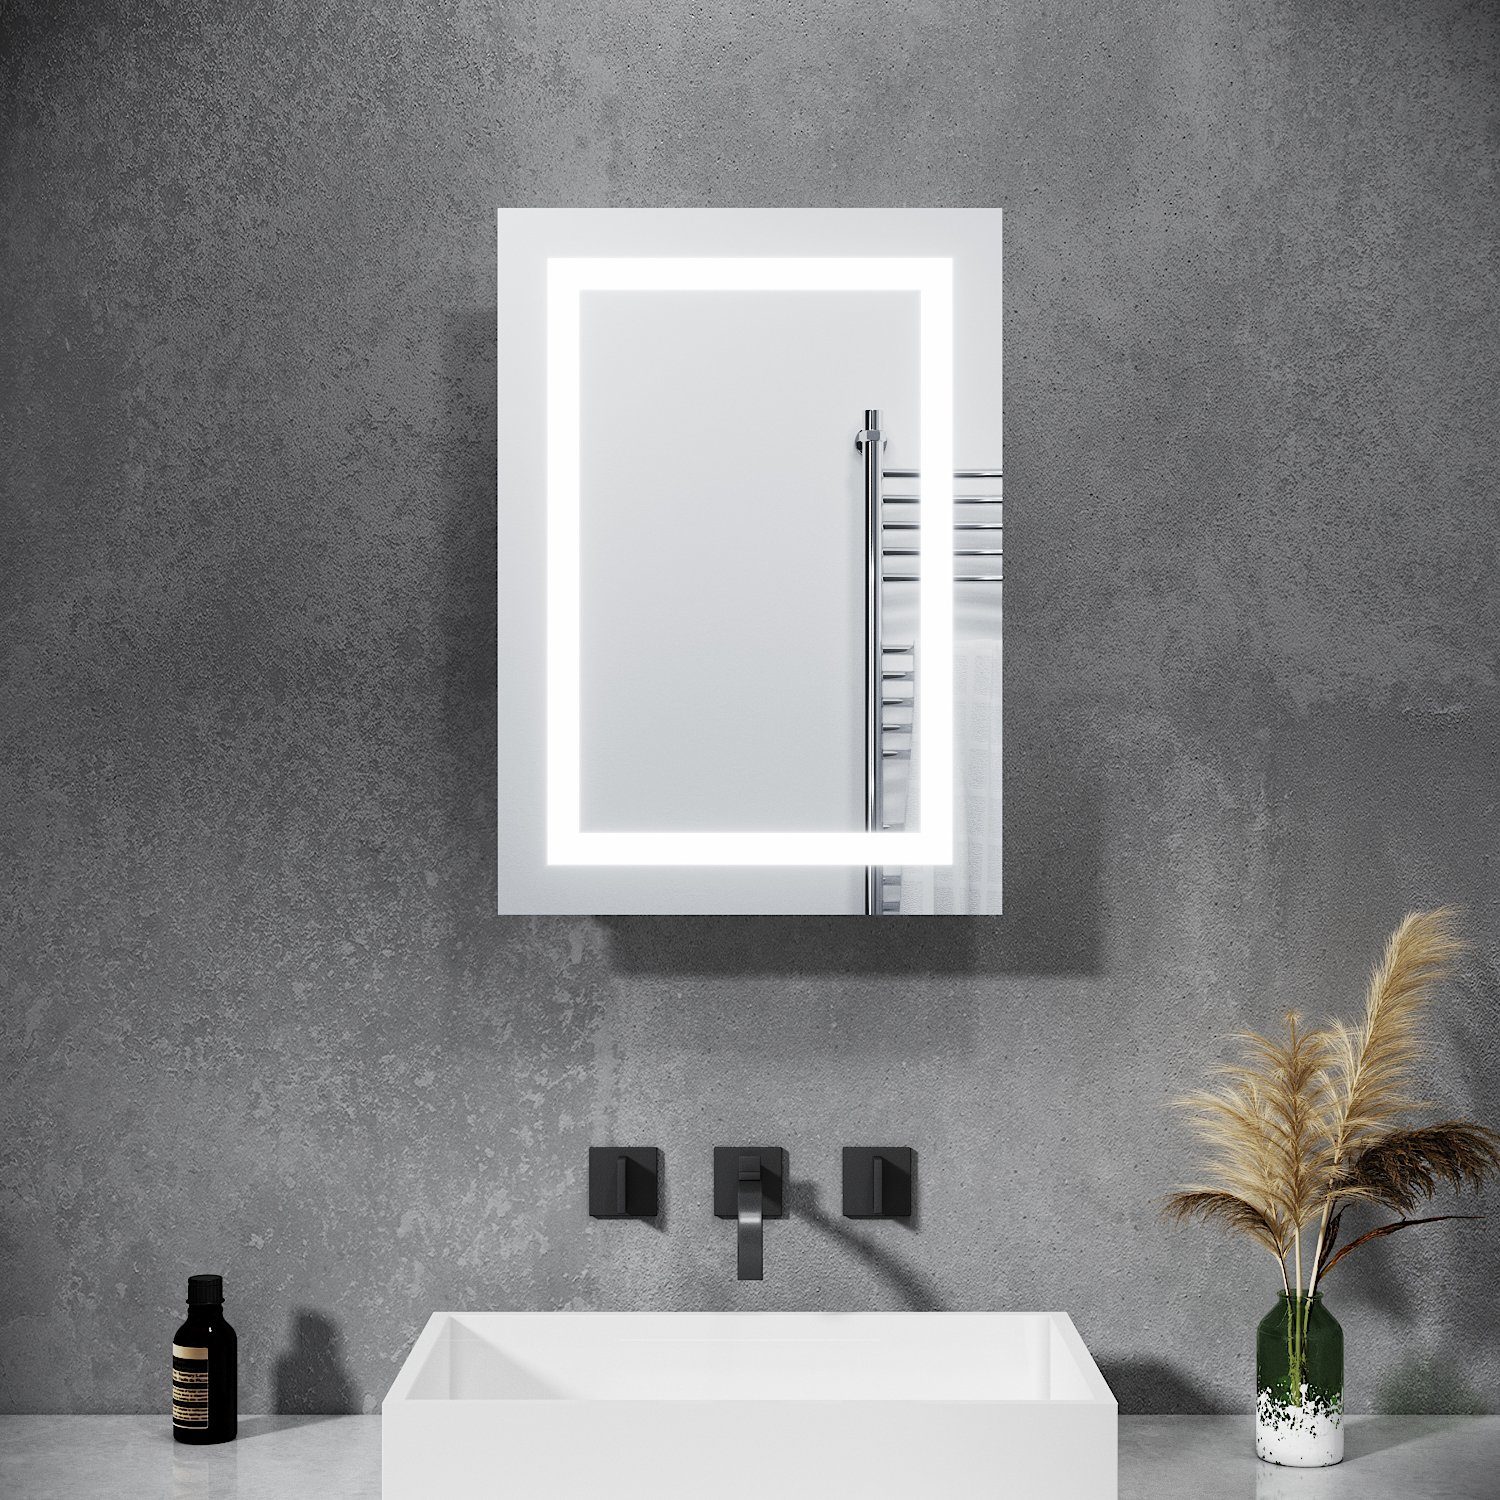 SONNI Spiegelschrank »Bad Spiegelschrank mit Beleuchtung Schiebetür LED  Licht Badezimmer Spiegelschrank Bad Hängeschrank mit Steckdose und  Kippschalter 50 x 70 cm« online kaufen | OTTO